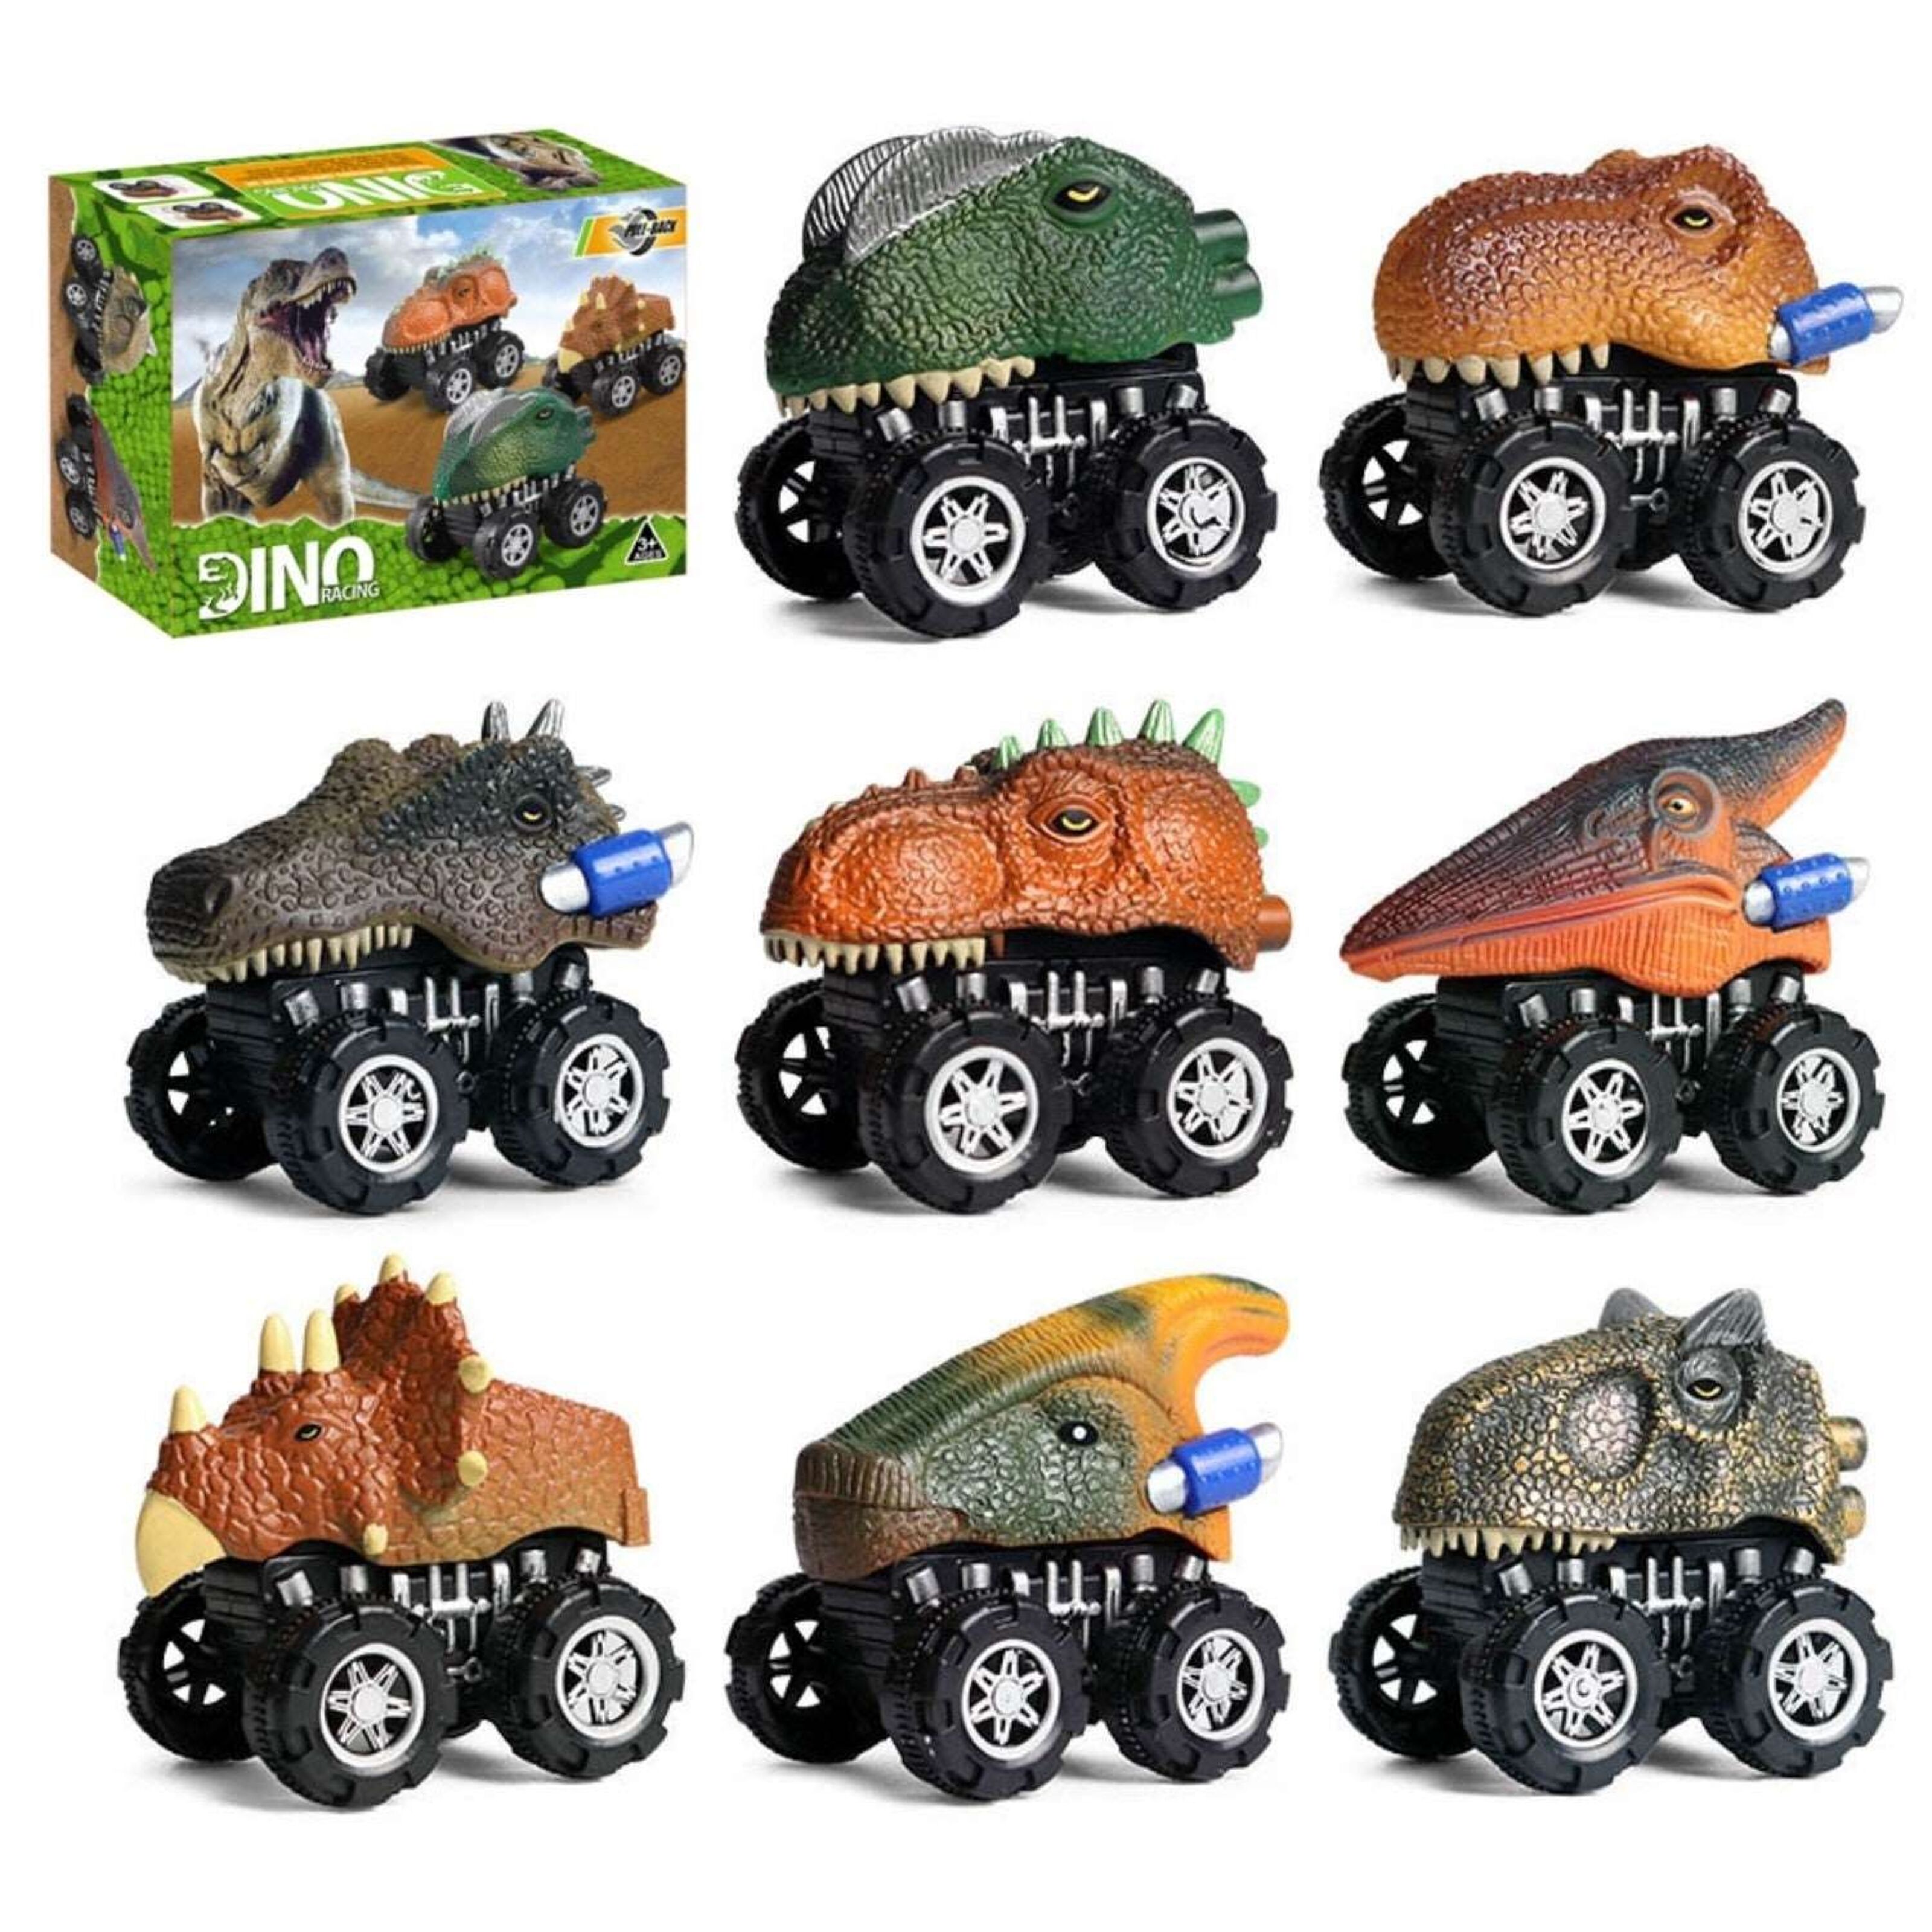 Kaufen Sie 8 in 1 Dinosaurier-Autos-Spielzeug-Set zu Großhandelspreisen